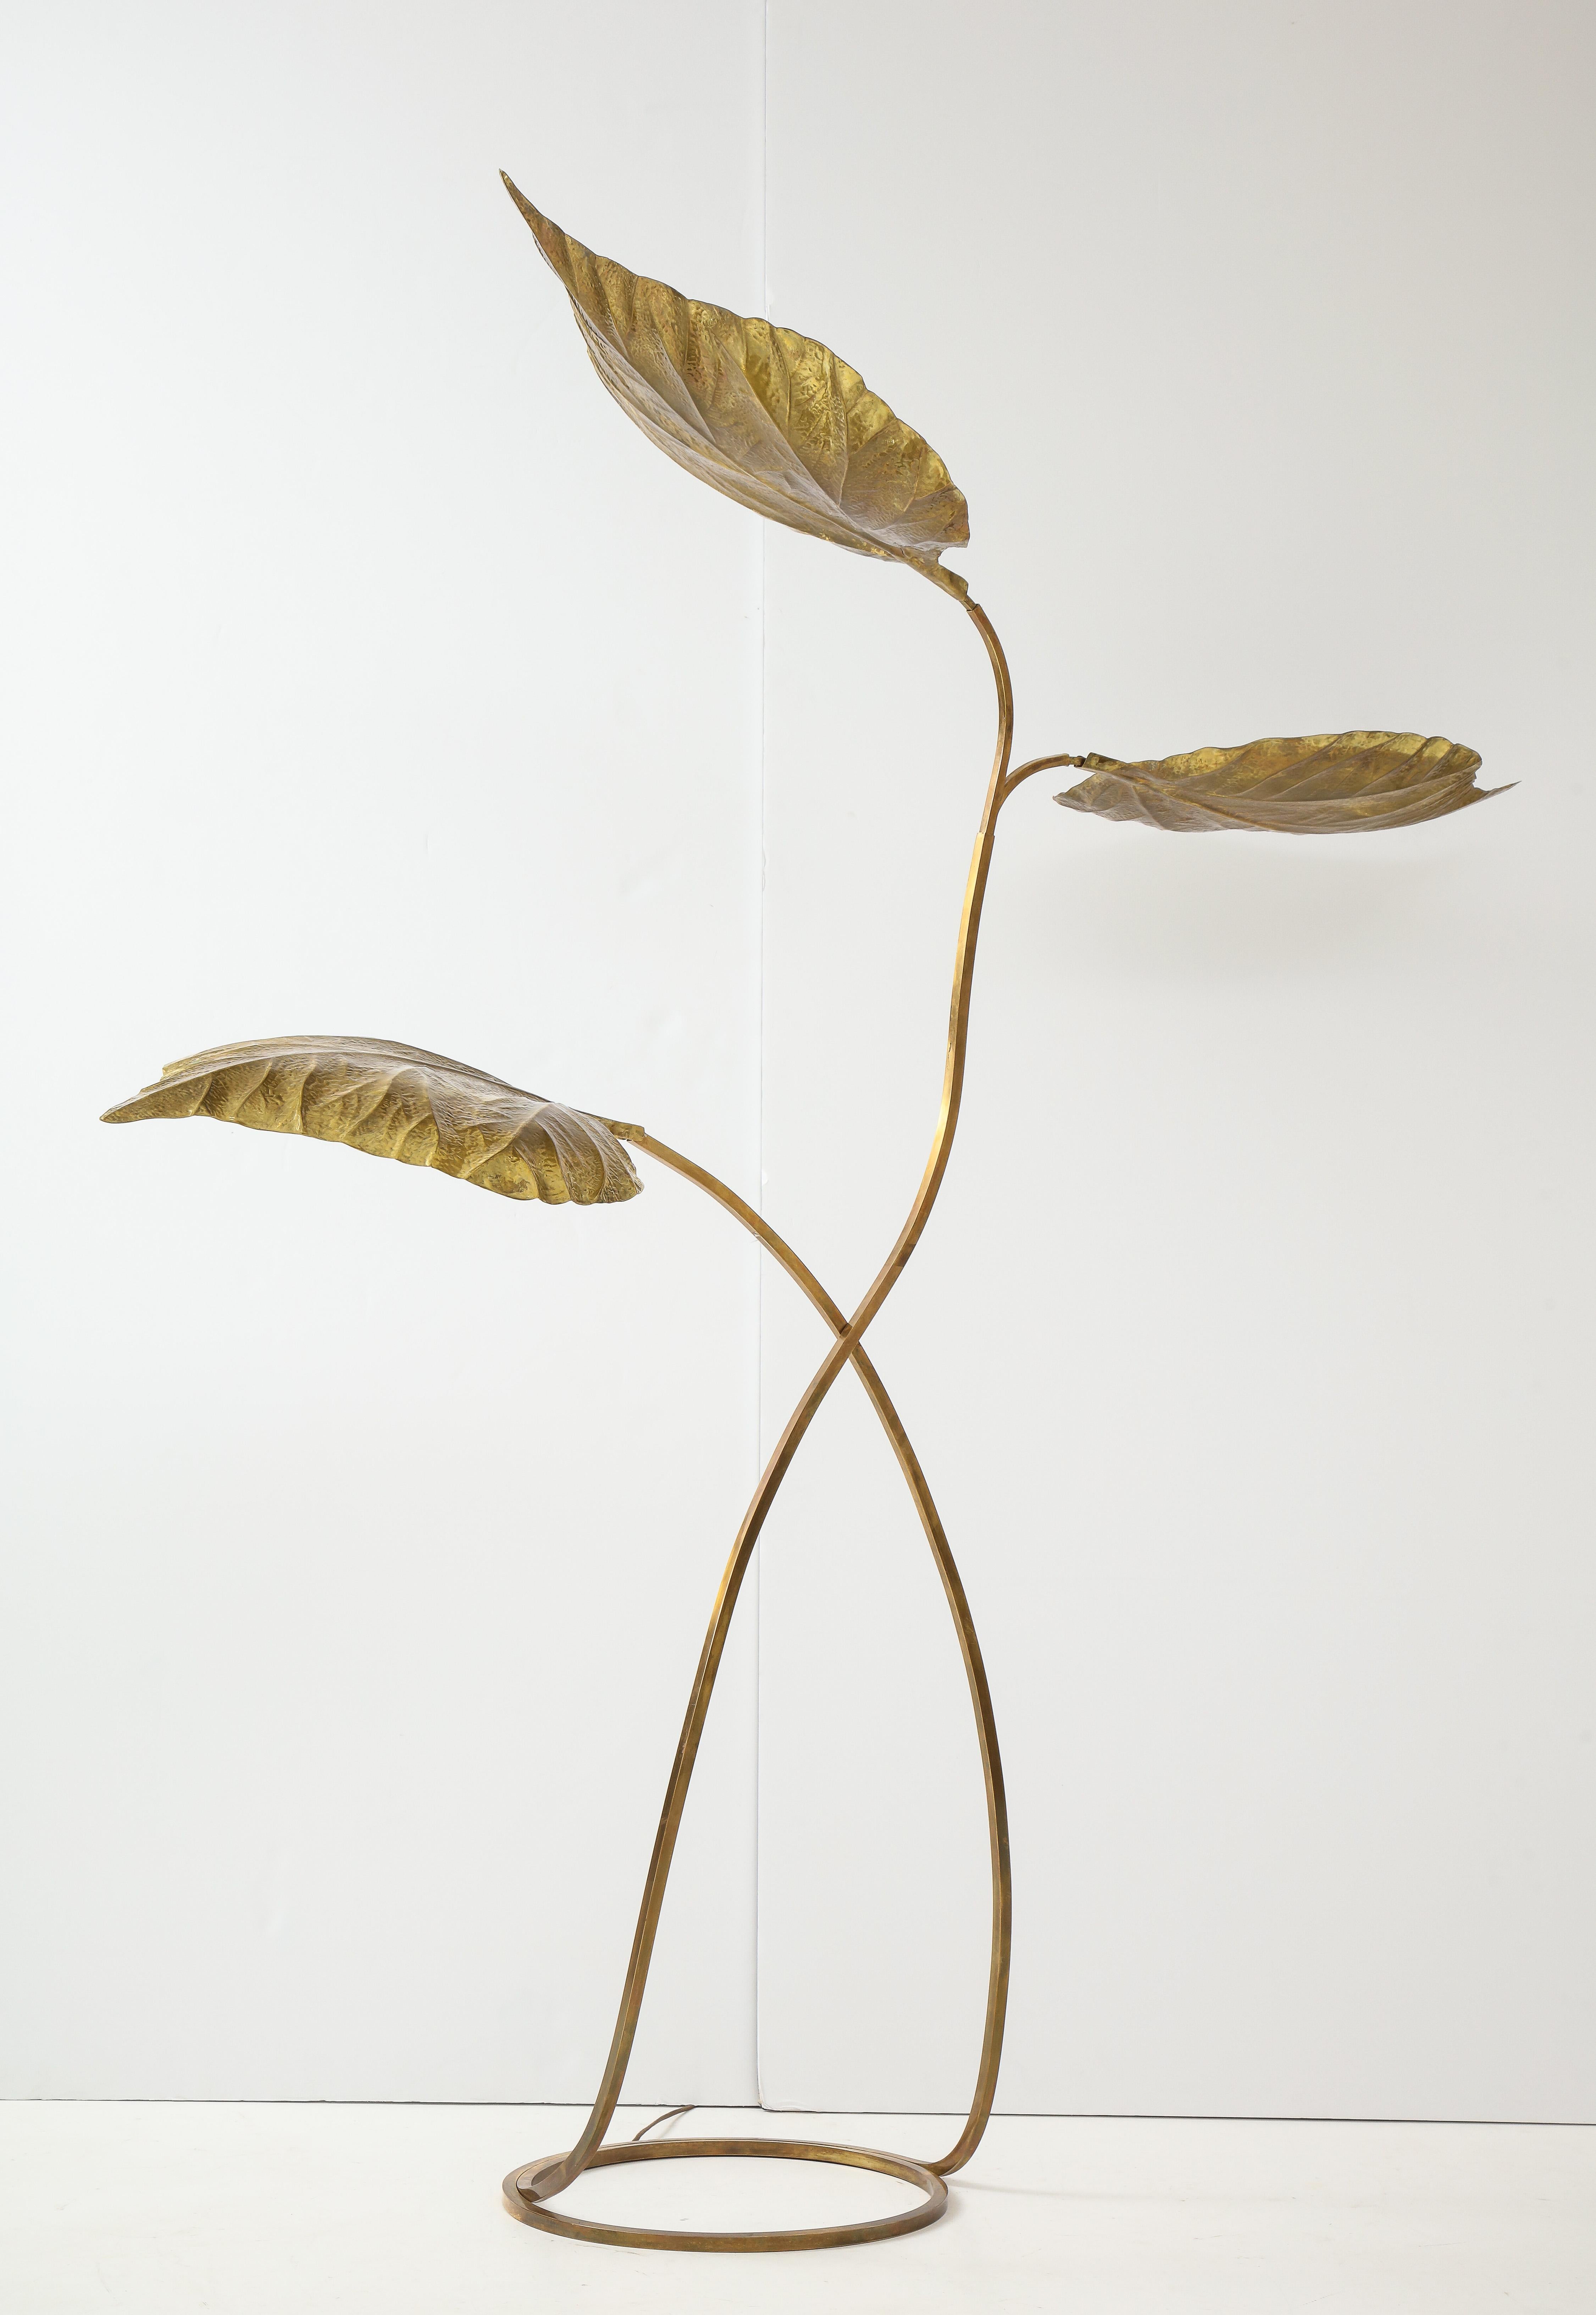 Énorme et élégant lampadaire 'Rabarbaro' ou rhubarbe à trois feuilles en laiton patiné et doré, avec des feuilles en relief, fait à la main en utilisant des techniques de repoussage et de ciselure, monté sur des tiges se terminant sur une base